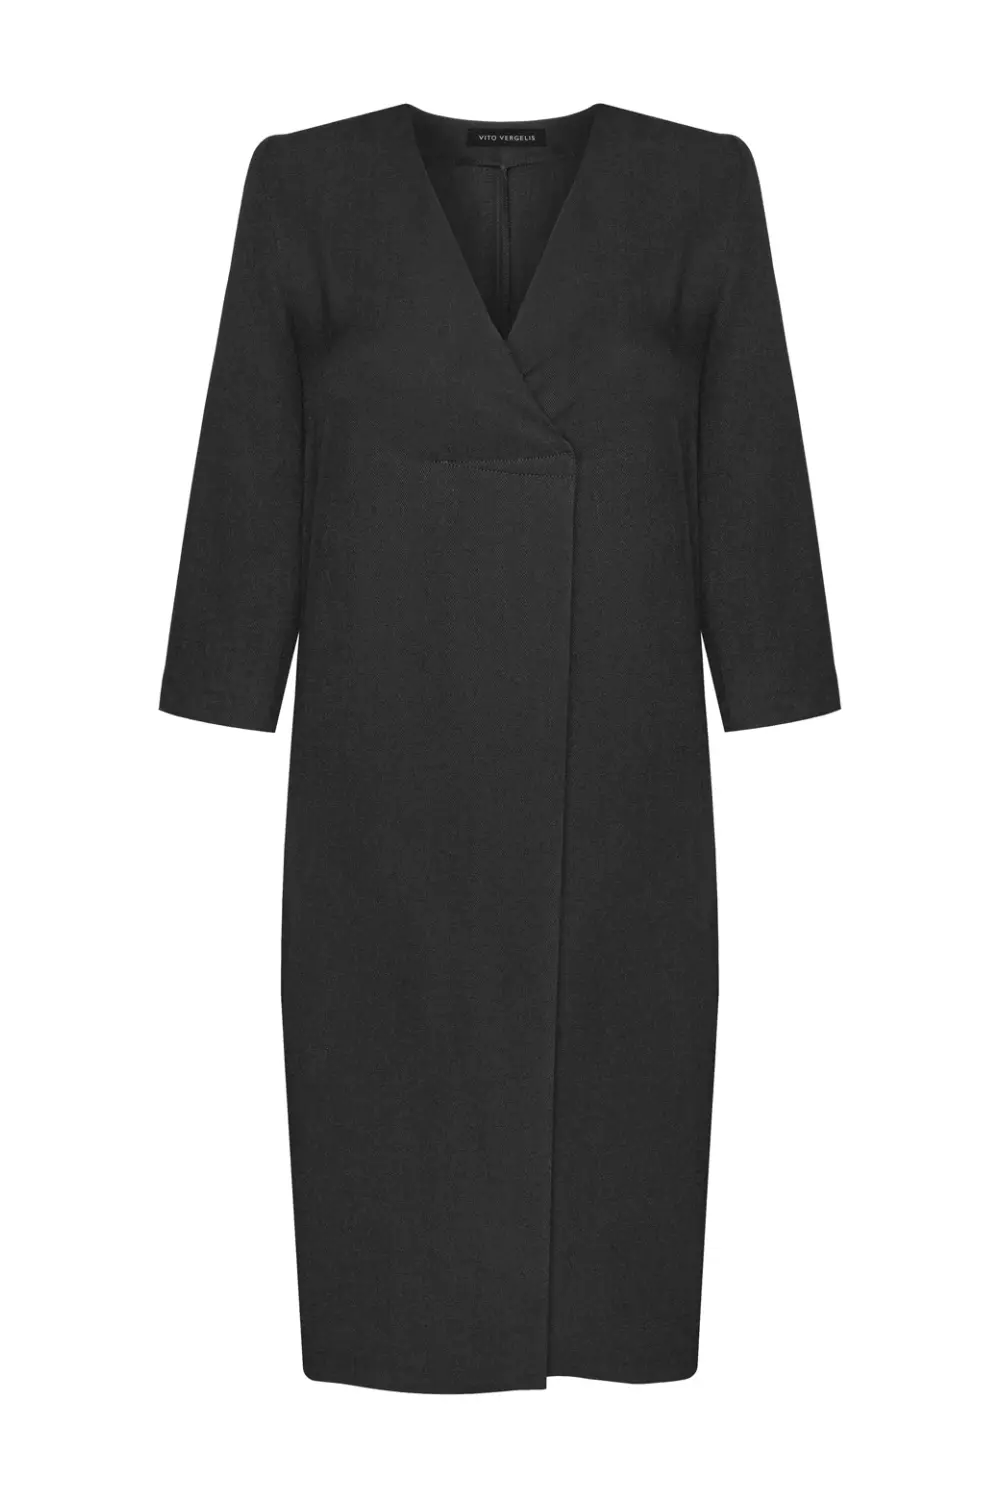 czarna sukienka z wiskozy i wełny elegancka sukienka z kontrafałdą polska marka Vito Vergelis Moda Wrocław